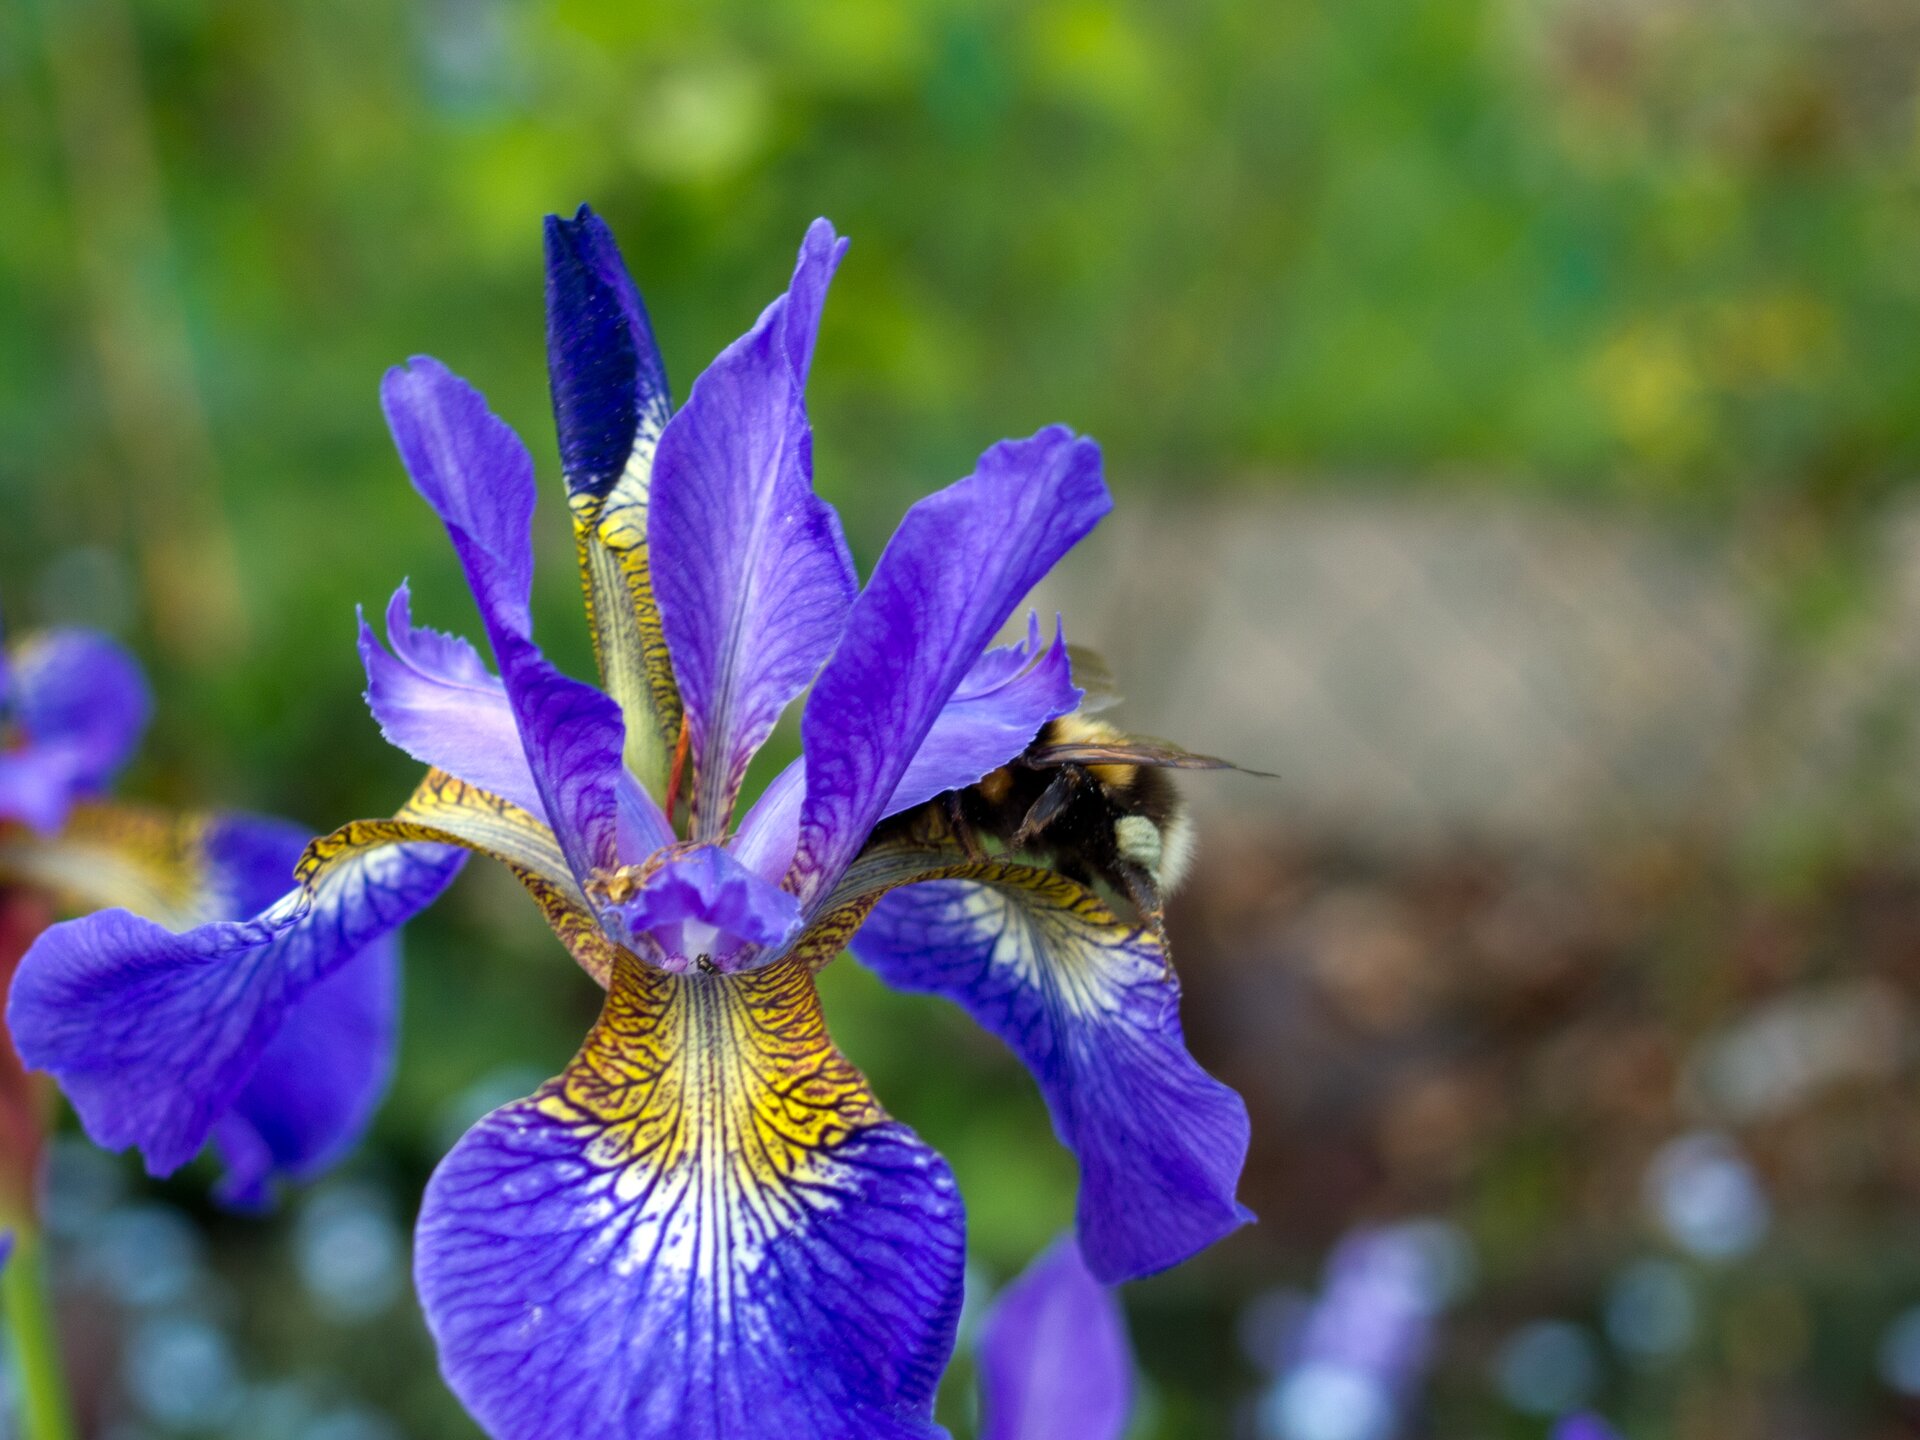 Fotografia przedstawia zbliżenie kwiatu irysa. Ma sześć niebiesko żółtych płatków. Na każdym płatku znajduje się ciemny wzór z linii i kropek. Jego zadaniem jest zwabienie owadów. Po prawej na płatku siedzi częściowo widoczna pszczoła.